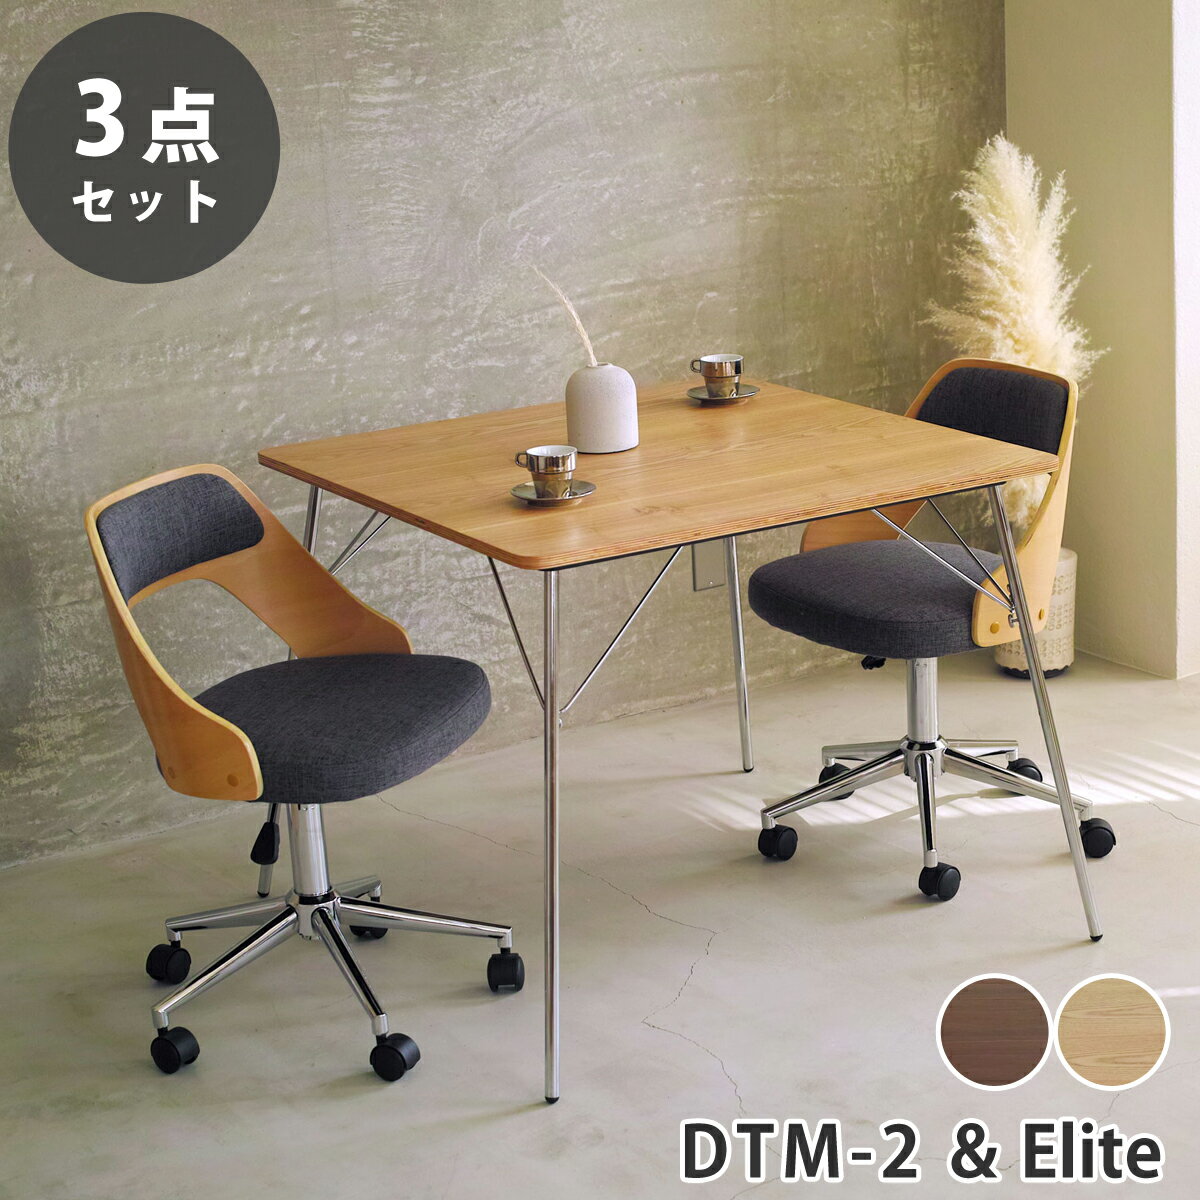 イームズ 折りたたみテーブル DTM-2 曲げ木オフィスチェア Elite (エリート) テーブル チェア セット リプロダクト | ダイニングテーブル オフィスチェア 椅子 木製 正方形 四角 北欧 スチール脚 ブルックリン デザイナーズ シンプル 送料無料